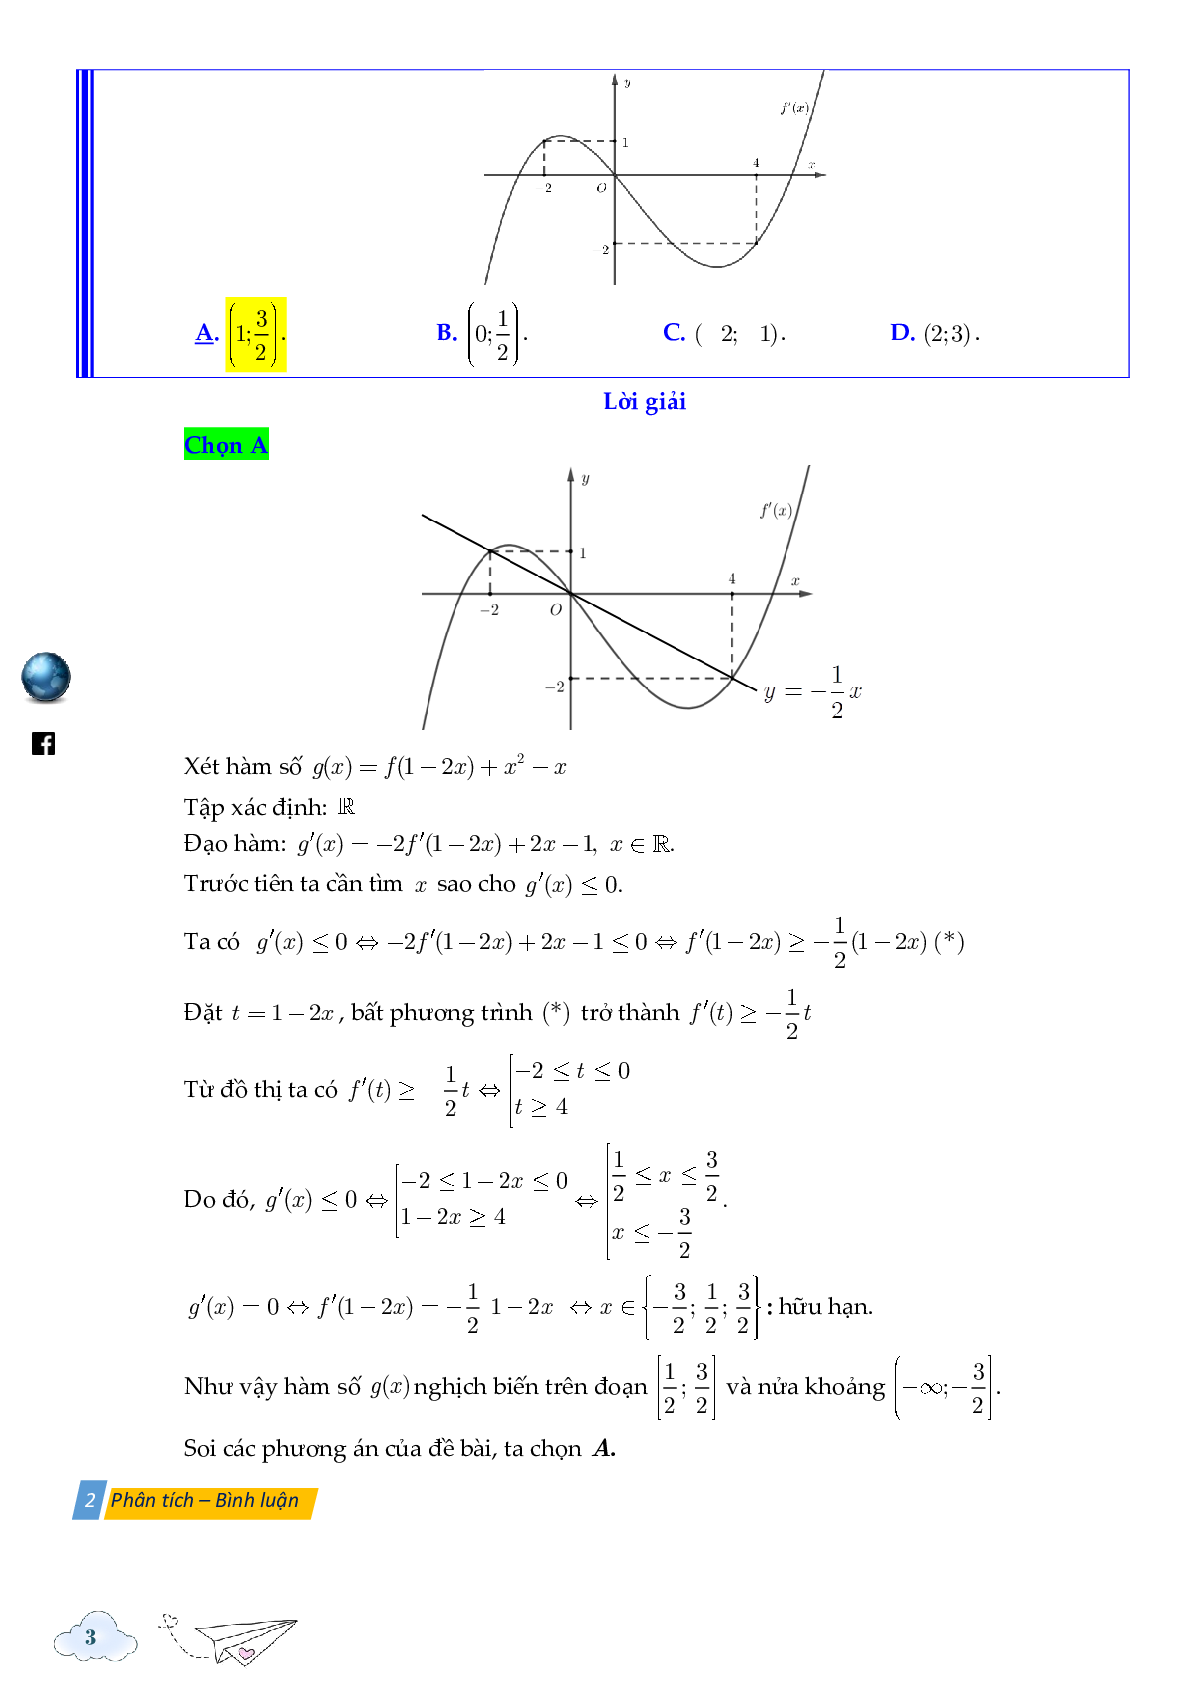 Tính đơn điệu của hàm ẩn được cho bởi đồ thị hàm f'(x) (trang 3)